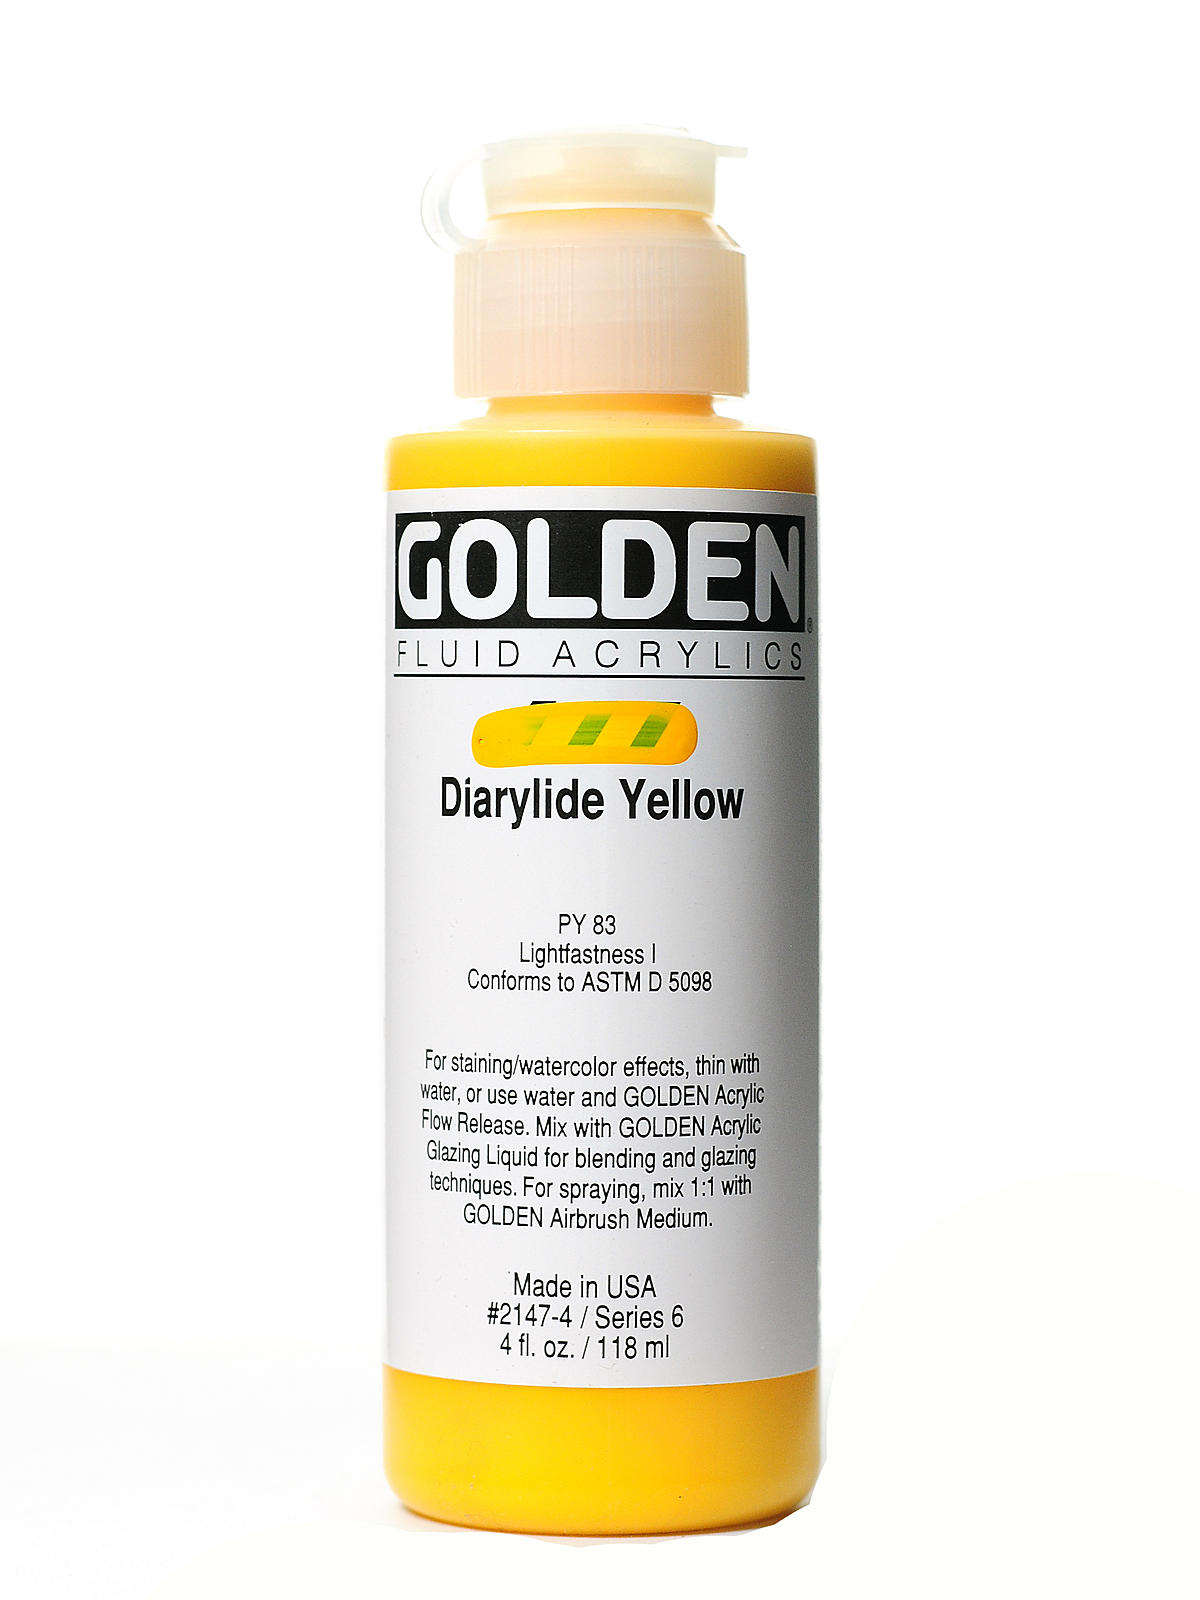 Fluid Acrylics diarylide yellow 4 oz.